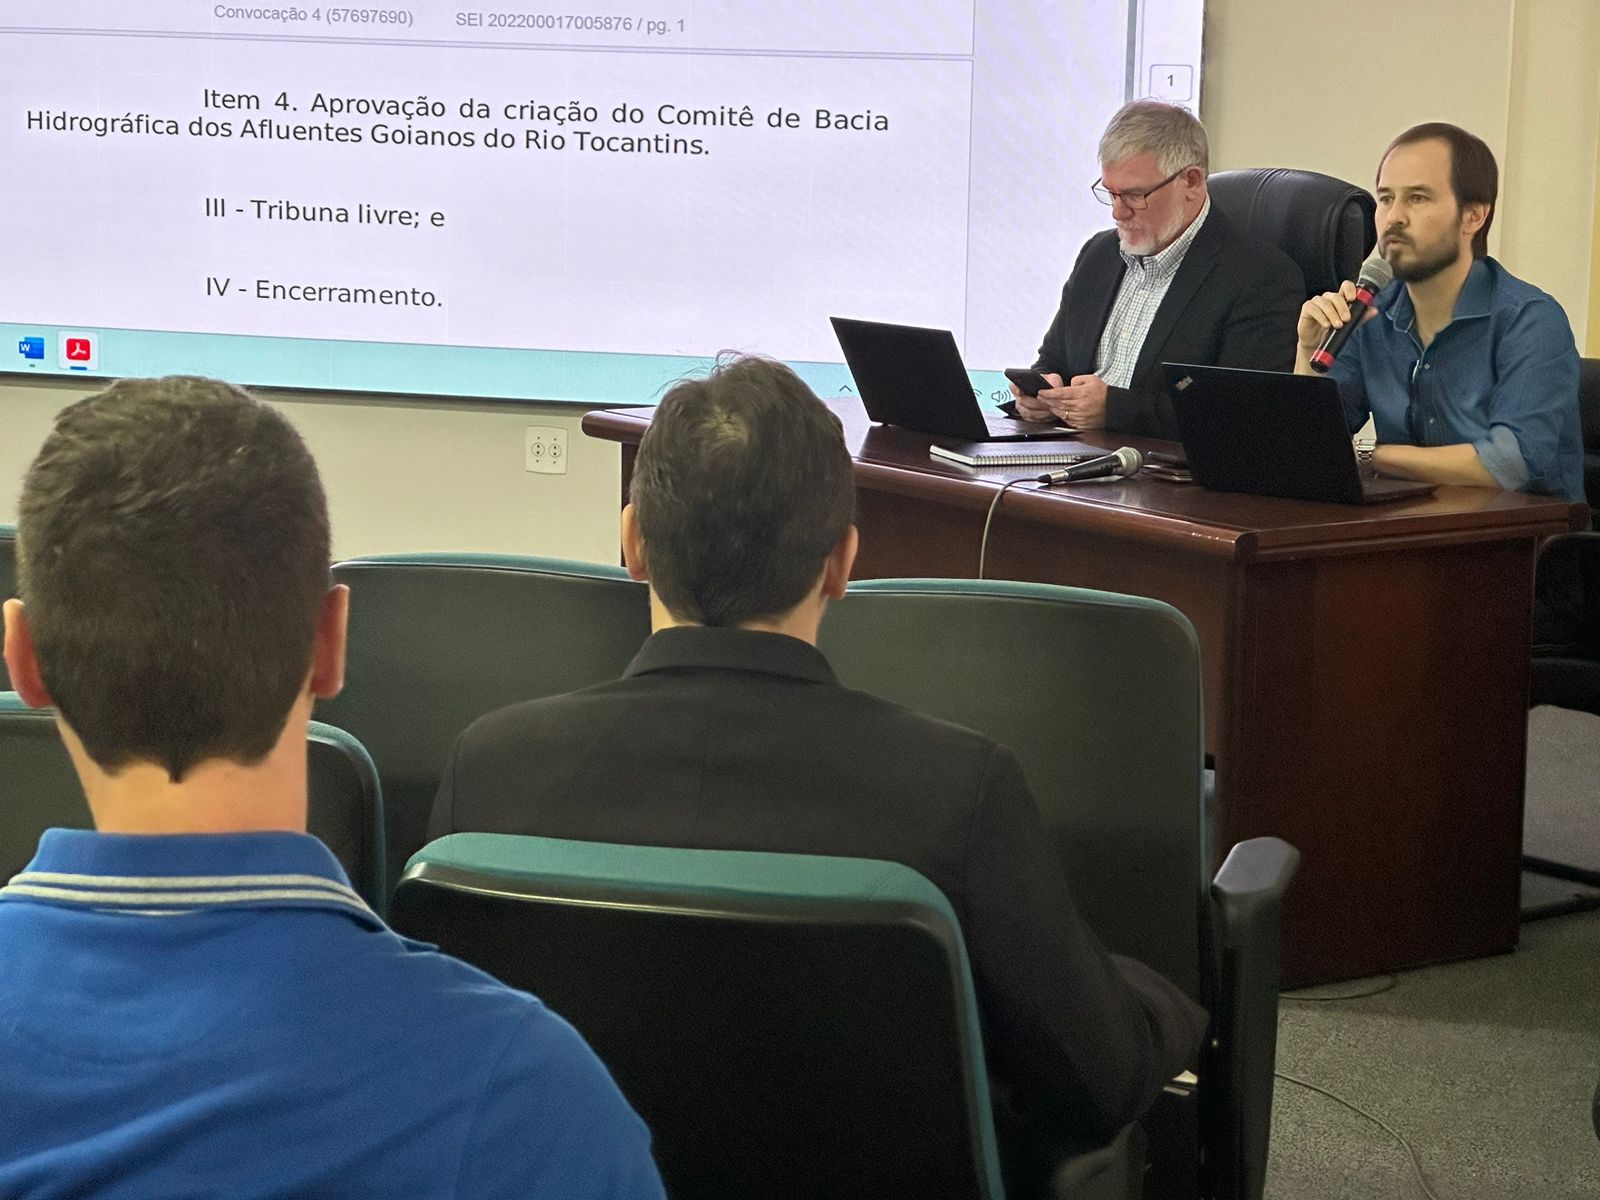 Reunião do Conselho Estadual dos Recursos Hídricos (Cehri) que aprovou a criação do comite de bacia dos afluentes goianos do Tocantins (Foto: Semad)